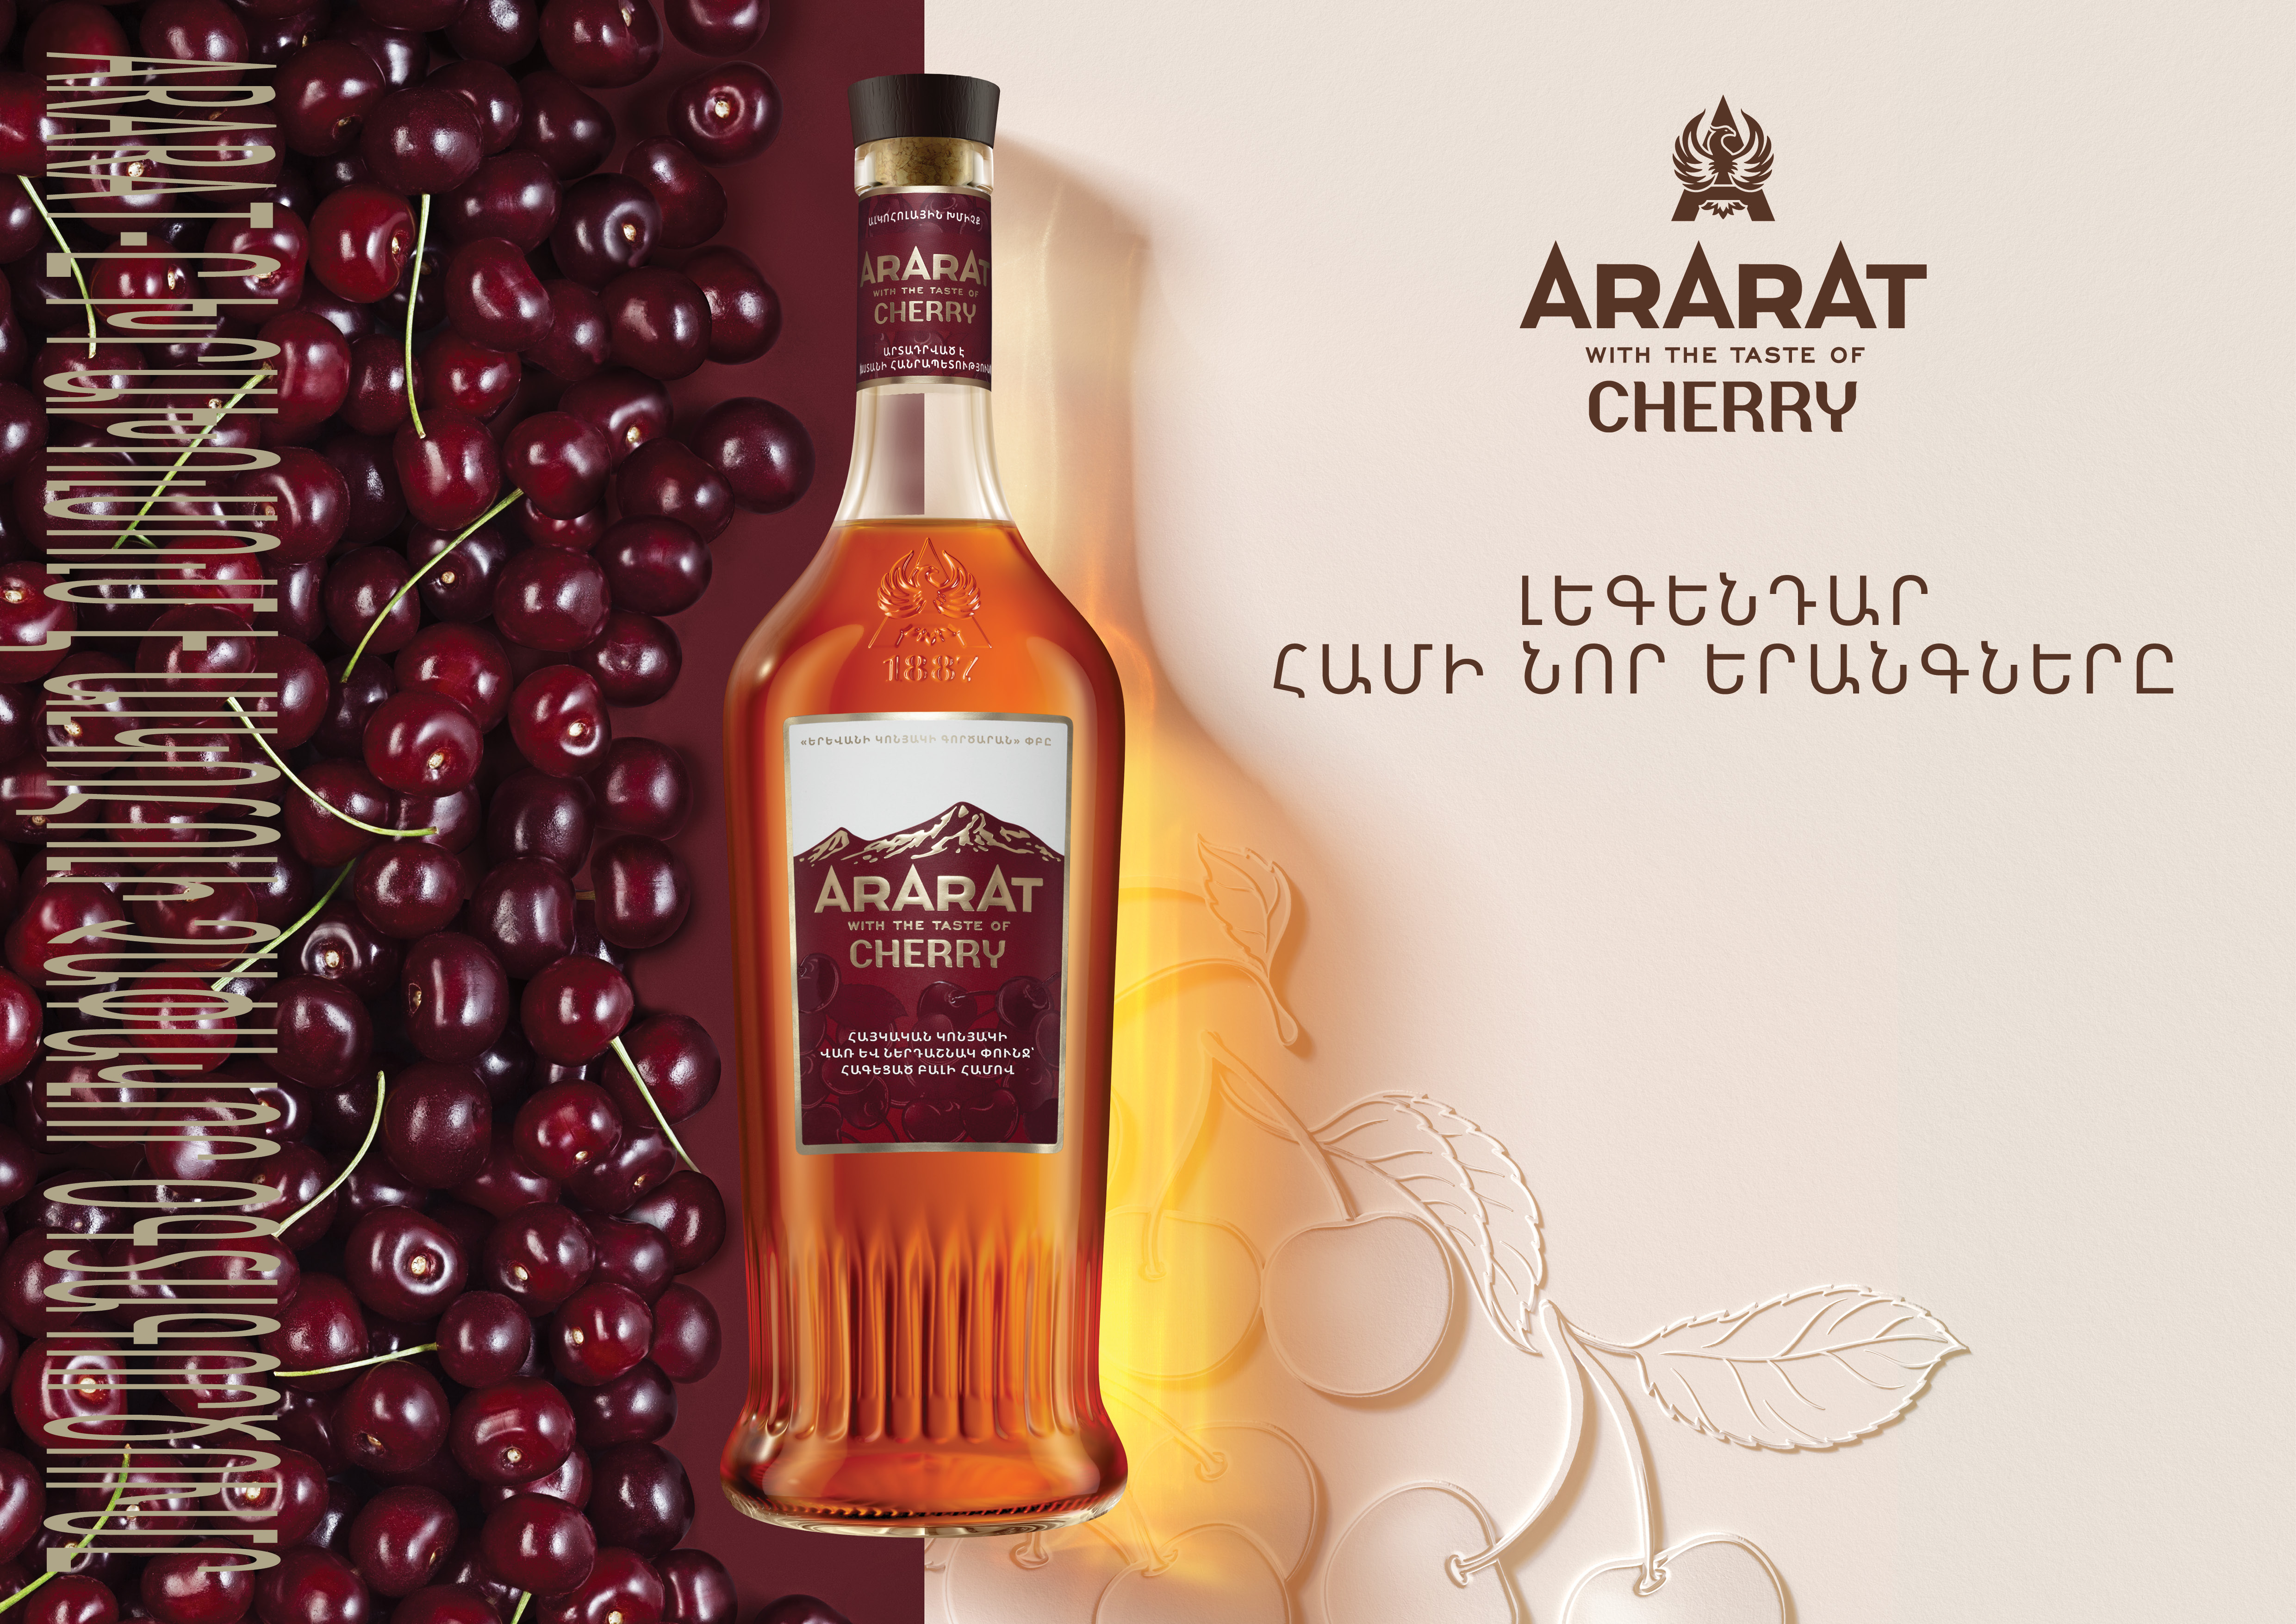 ARARAT Cherry.Դասական կոնյակի վառ եզրերը ARARAT-ի համահոտային հավաքածուի նոր խմիչքում